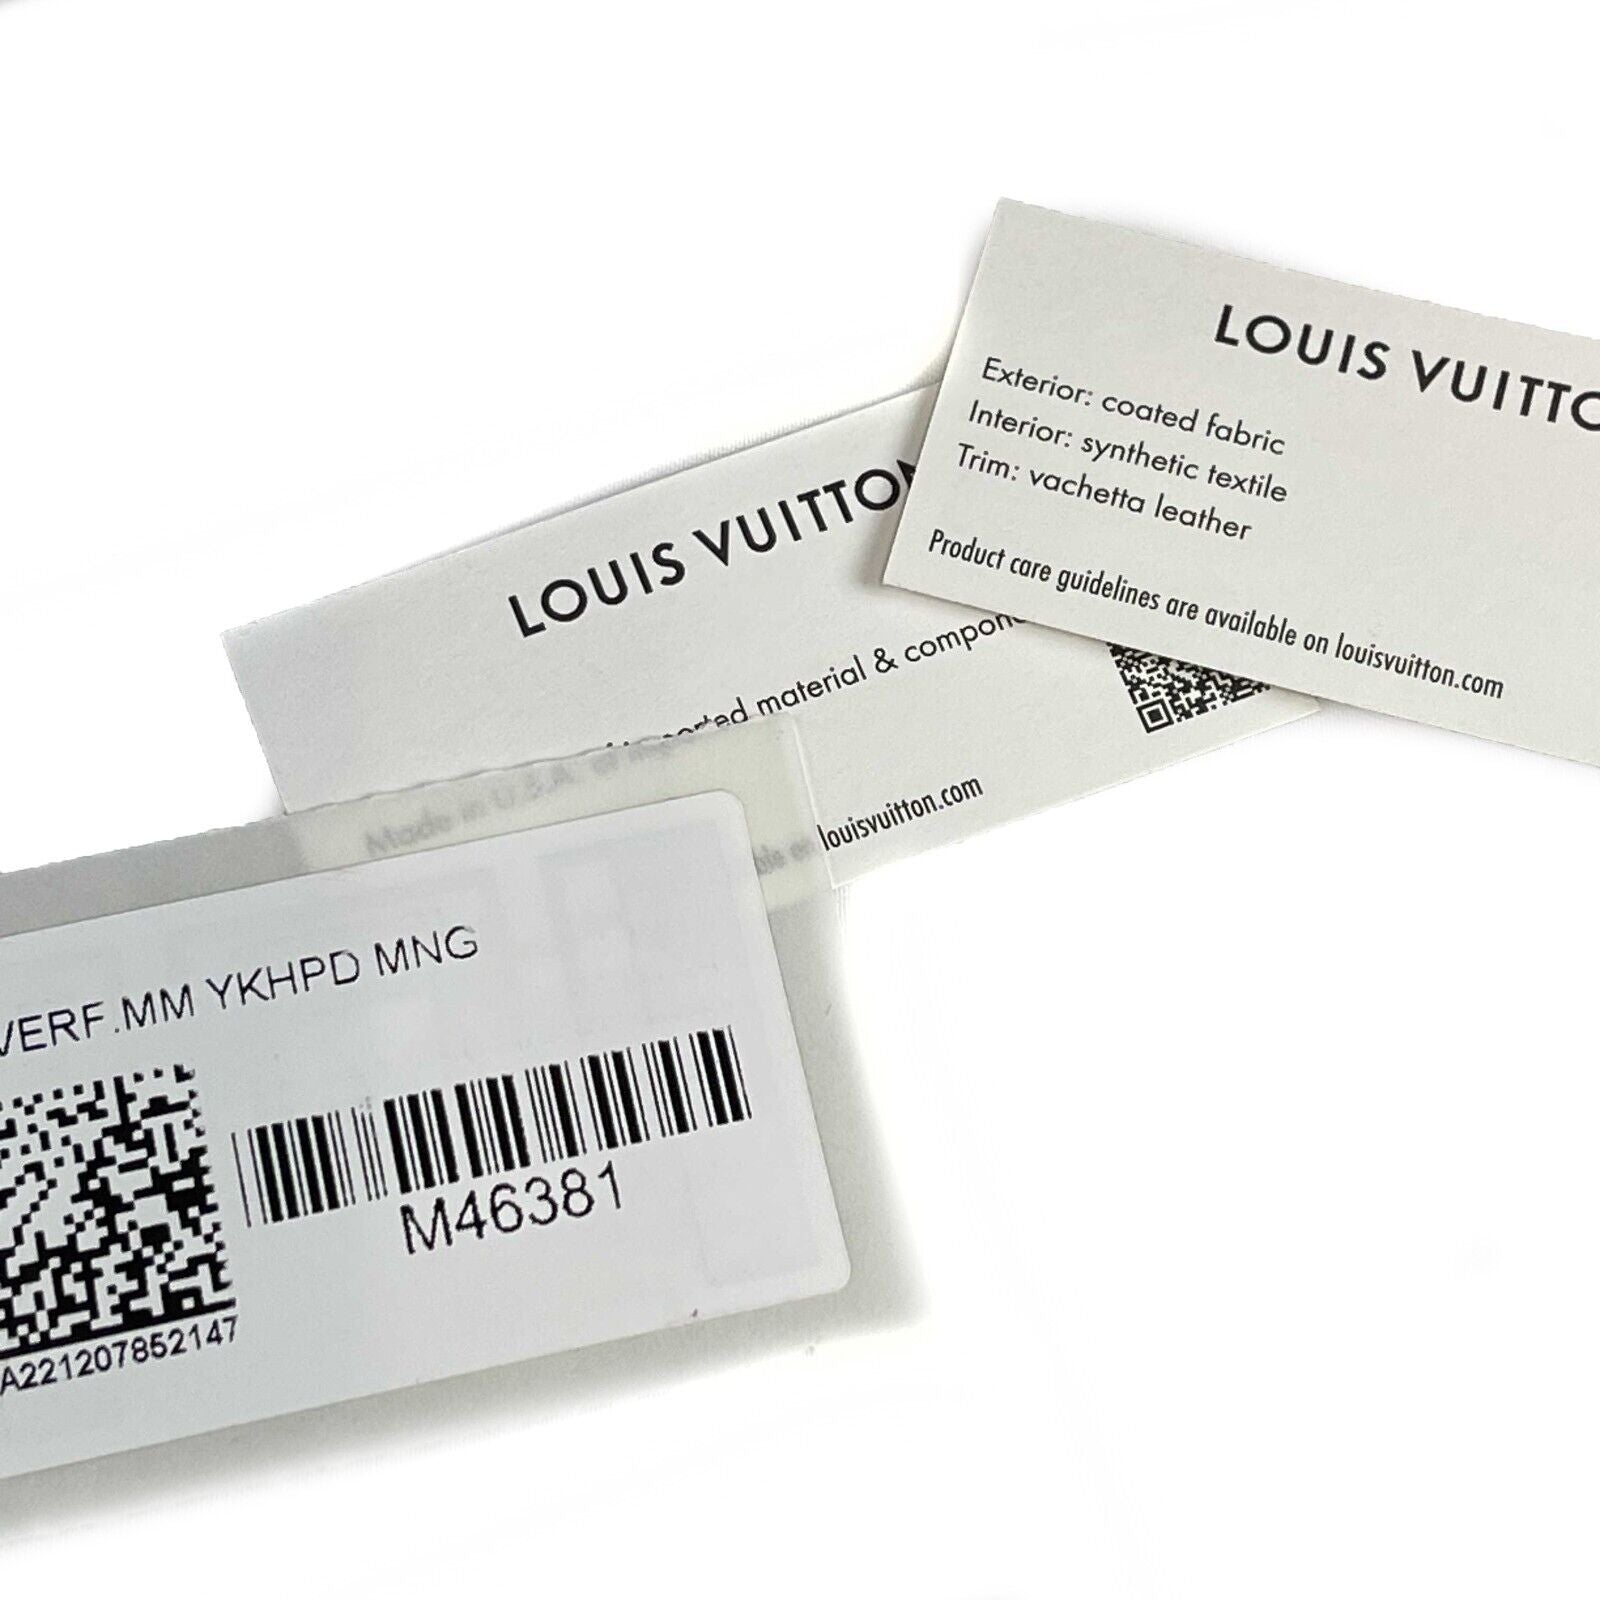 Louis Vuitton QR Codes by Takashi Murakami